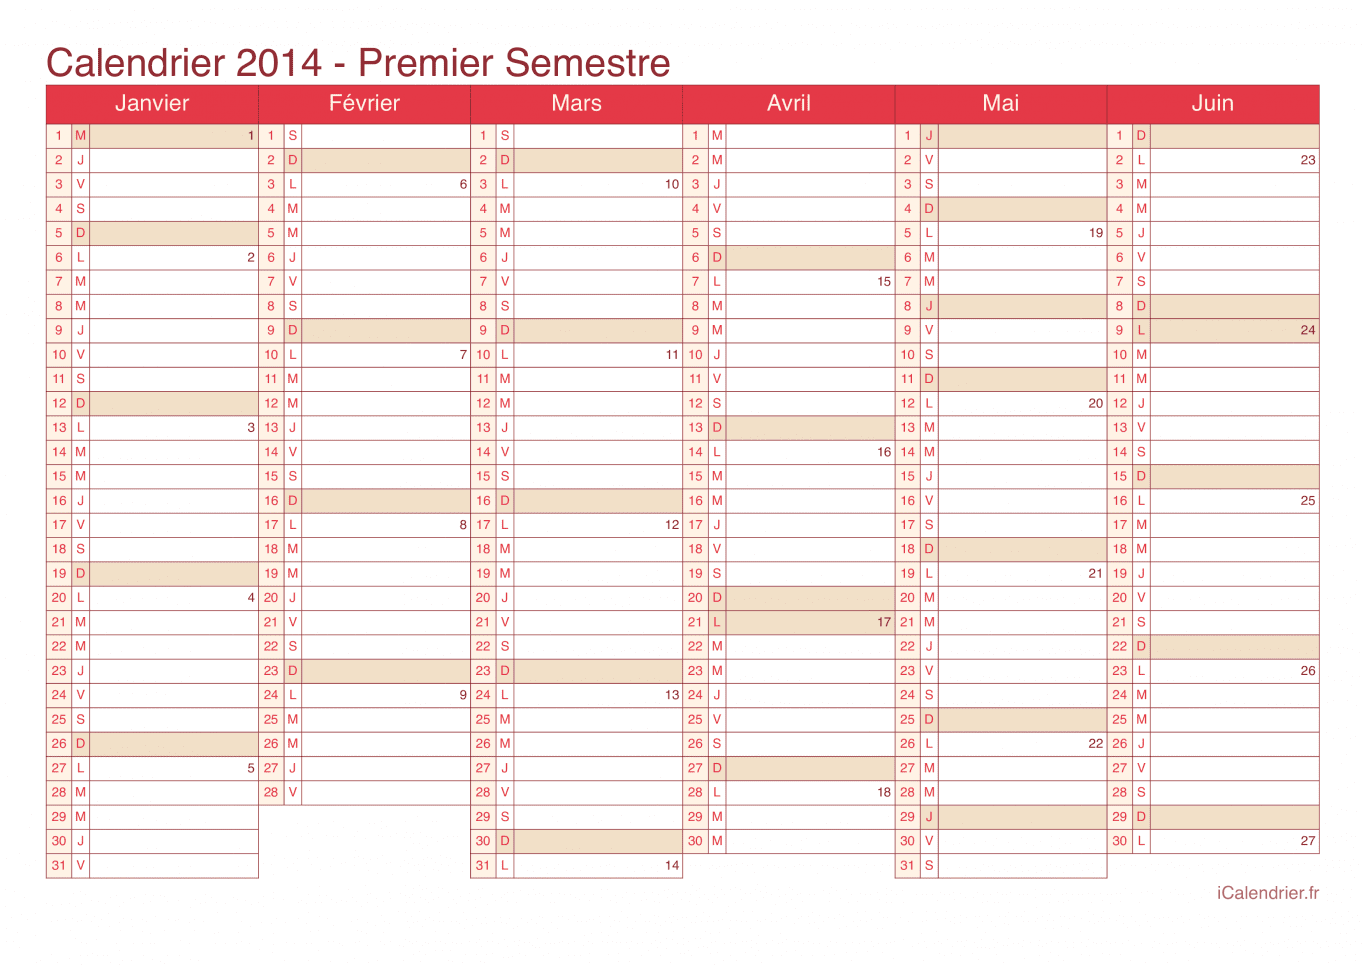 Calendrier par semestre avec numéros des semaines 2014 - Cherry